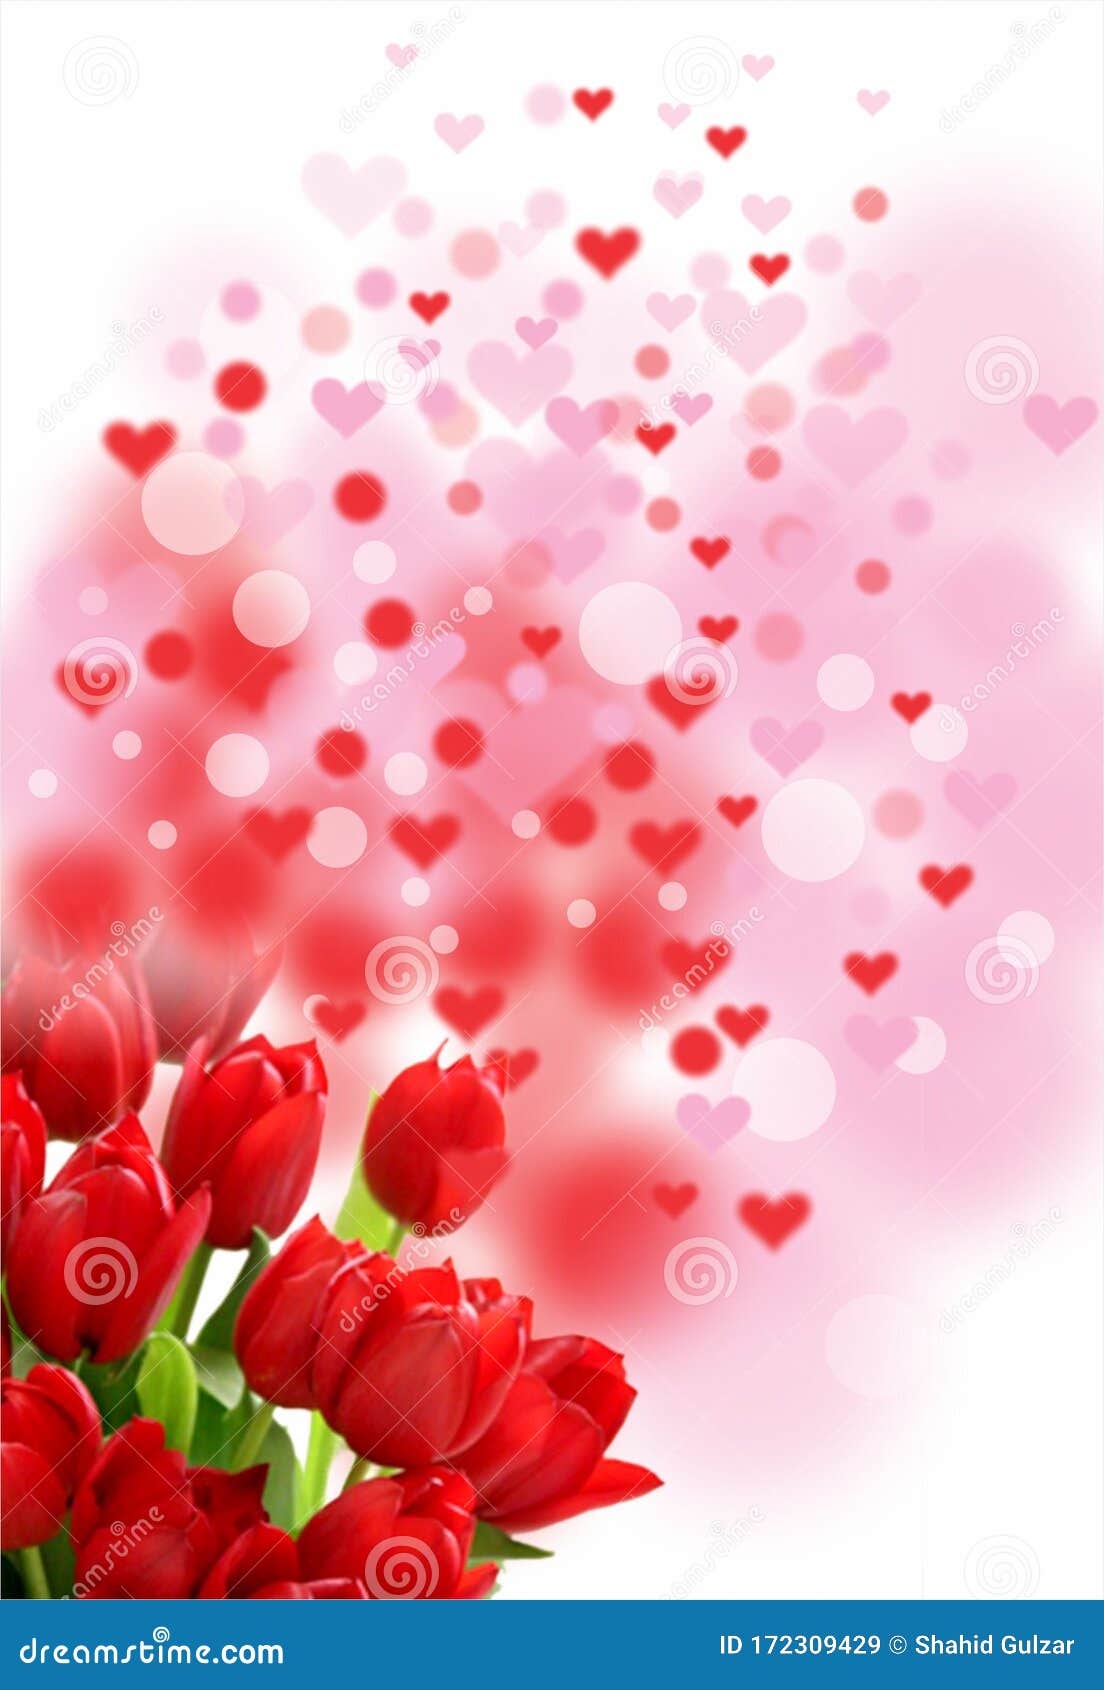 Thẻ tình yêu Valentine hoa tulip đỏ, trái tim hồng - Tặng người mình yêu một món quà đặc biệt và ý nghĩa với thẻ tình yêu Valentine hoa tulip đỏ, trái tim hồng. Những bông hoa tulip thể hiện tình yêu và sự tươi vui, còn trái tim hồng bày tỏ sự chân thành và sự ấm áp. Chắc chắn đây sẽ là món quà ngọt ngào và đầy ý nghĩa!